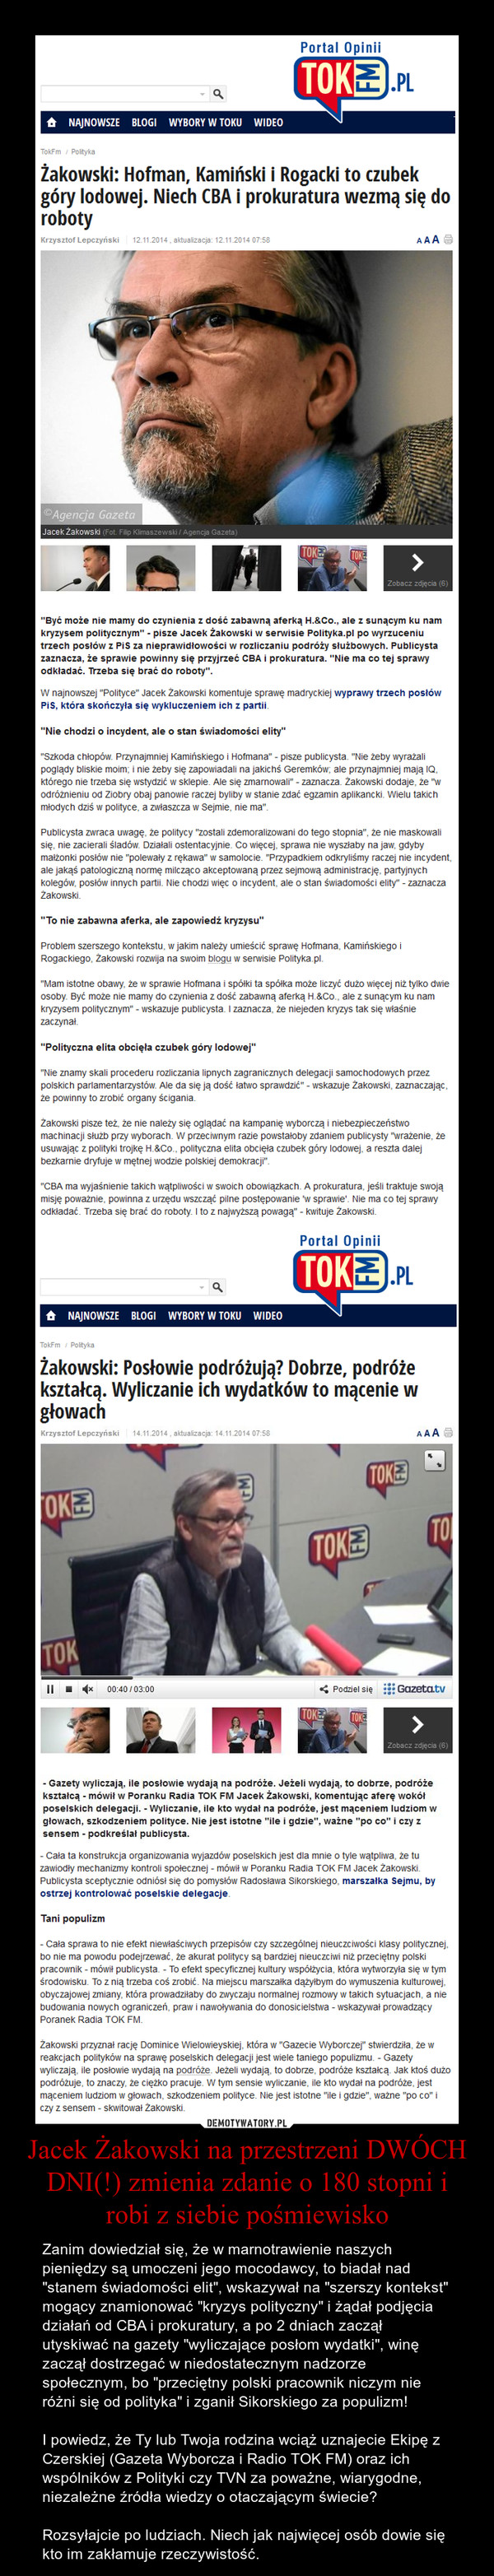 Jacek Żakowski na przestrzeni DWÓCH DNI(!) zmienia zdanie o 180 stopni i robi z siebie pośmiewisko – Zanim dowiedział się, że w marnotrawienie naszych pieniędzy są umoczeni jego mocodawcy, to biadał nad "stanem świadomości elit", wskazywał na "szerszy kontekst" mogący znamionować "kryzys polityczny" i żądał podjęcia działań od CBA i prokuratury, a po 2 dniach zaczął utyskiwać na gazety "wyliczające posłom wydatki", winę zaczął dostrzegać w niedostatecznym nadzorze społecznym, bo "przeciętny polski pracownik niczym nie różni się od polityka" i zganił Sikorskiego za populizm!I powiedz, że Ty lub Twoja rodzina wciąż uznajecie Ekipę z Czerskiej (Gazeta Wyborcza i Radio TOK FM) oraz ich wspólników z Polityki czy TVN za poważne, wiarygodne, niezależne źródła wiedzy o otaczającym świecie?Rozsyłajcie po ludziach. Niech jak najwięcej osób dowie się kto im zakłamuje rzeczywistość. 